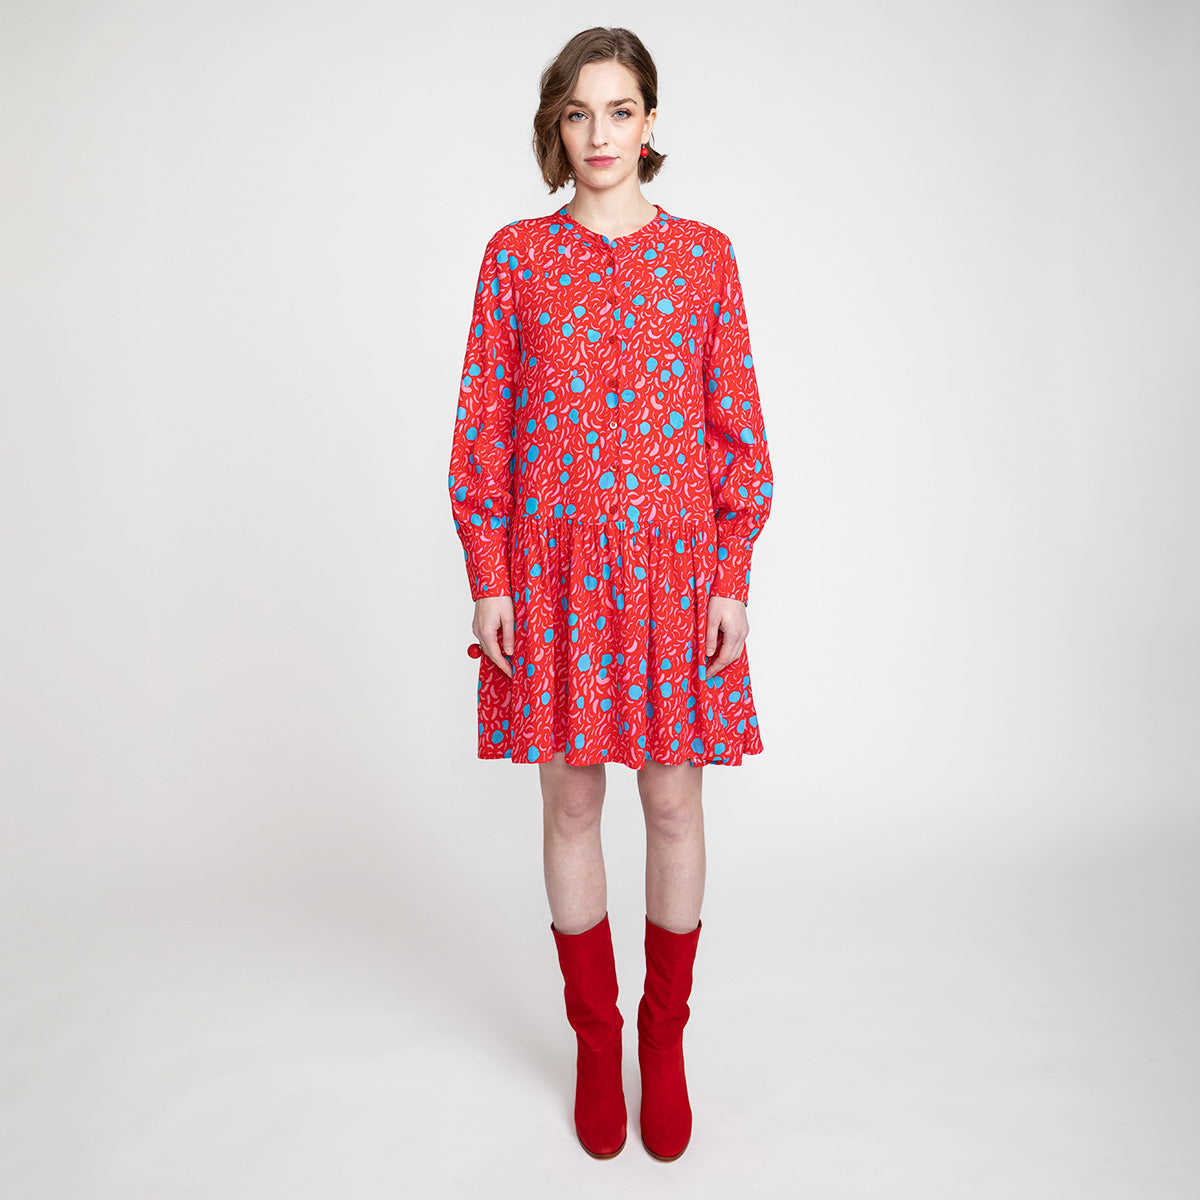 Miliina dress, Tuovi, red